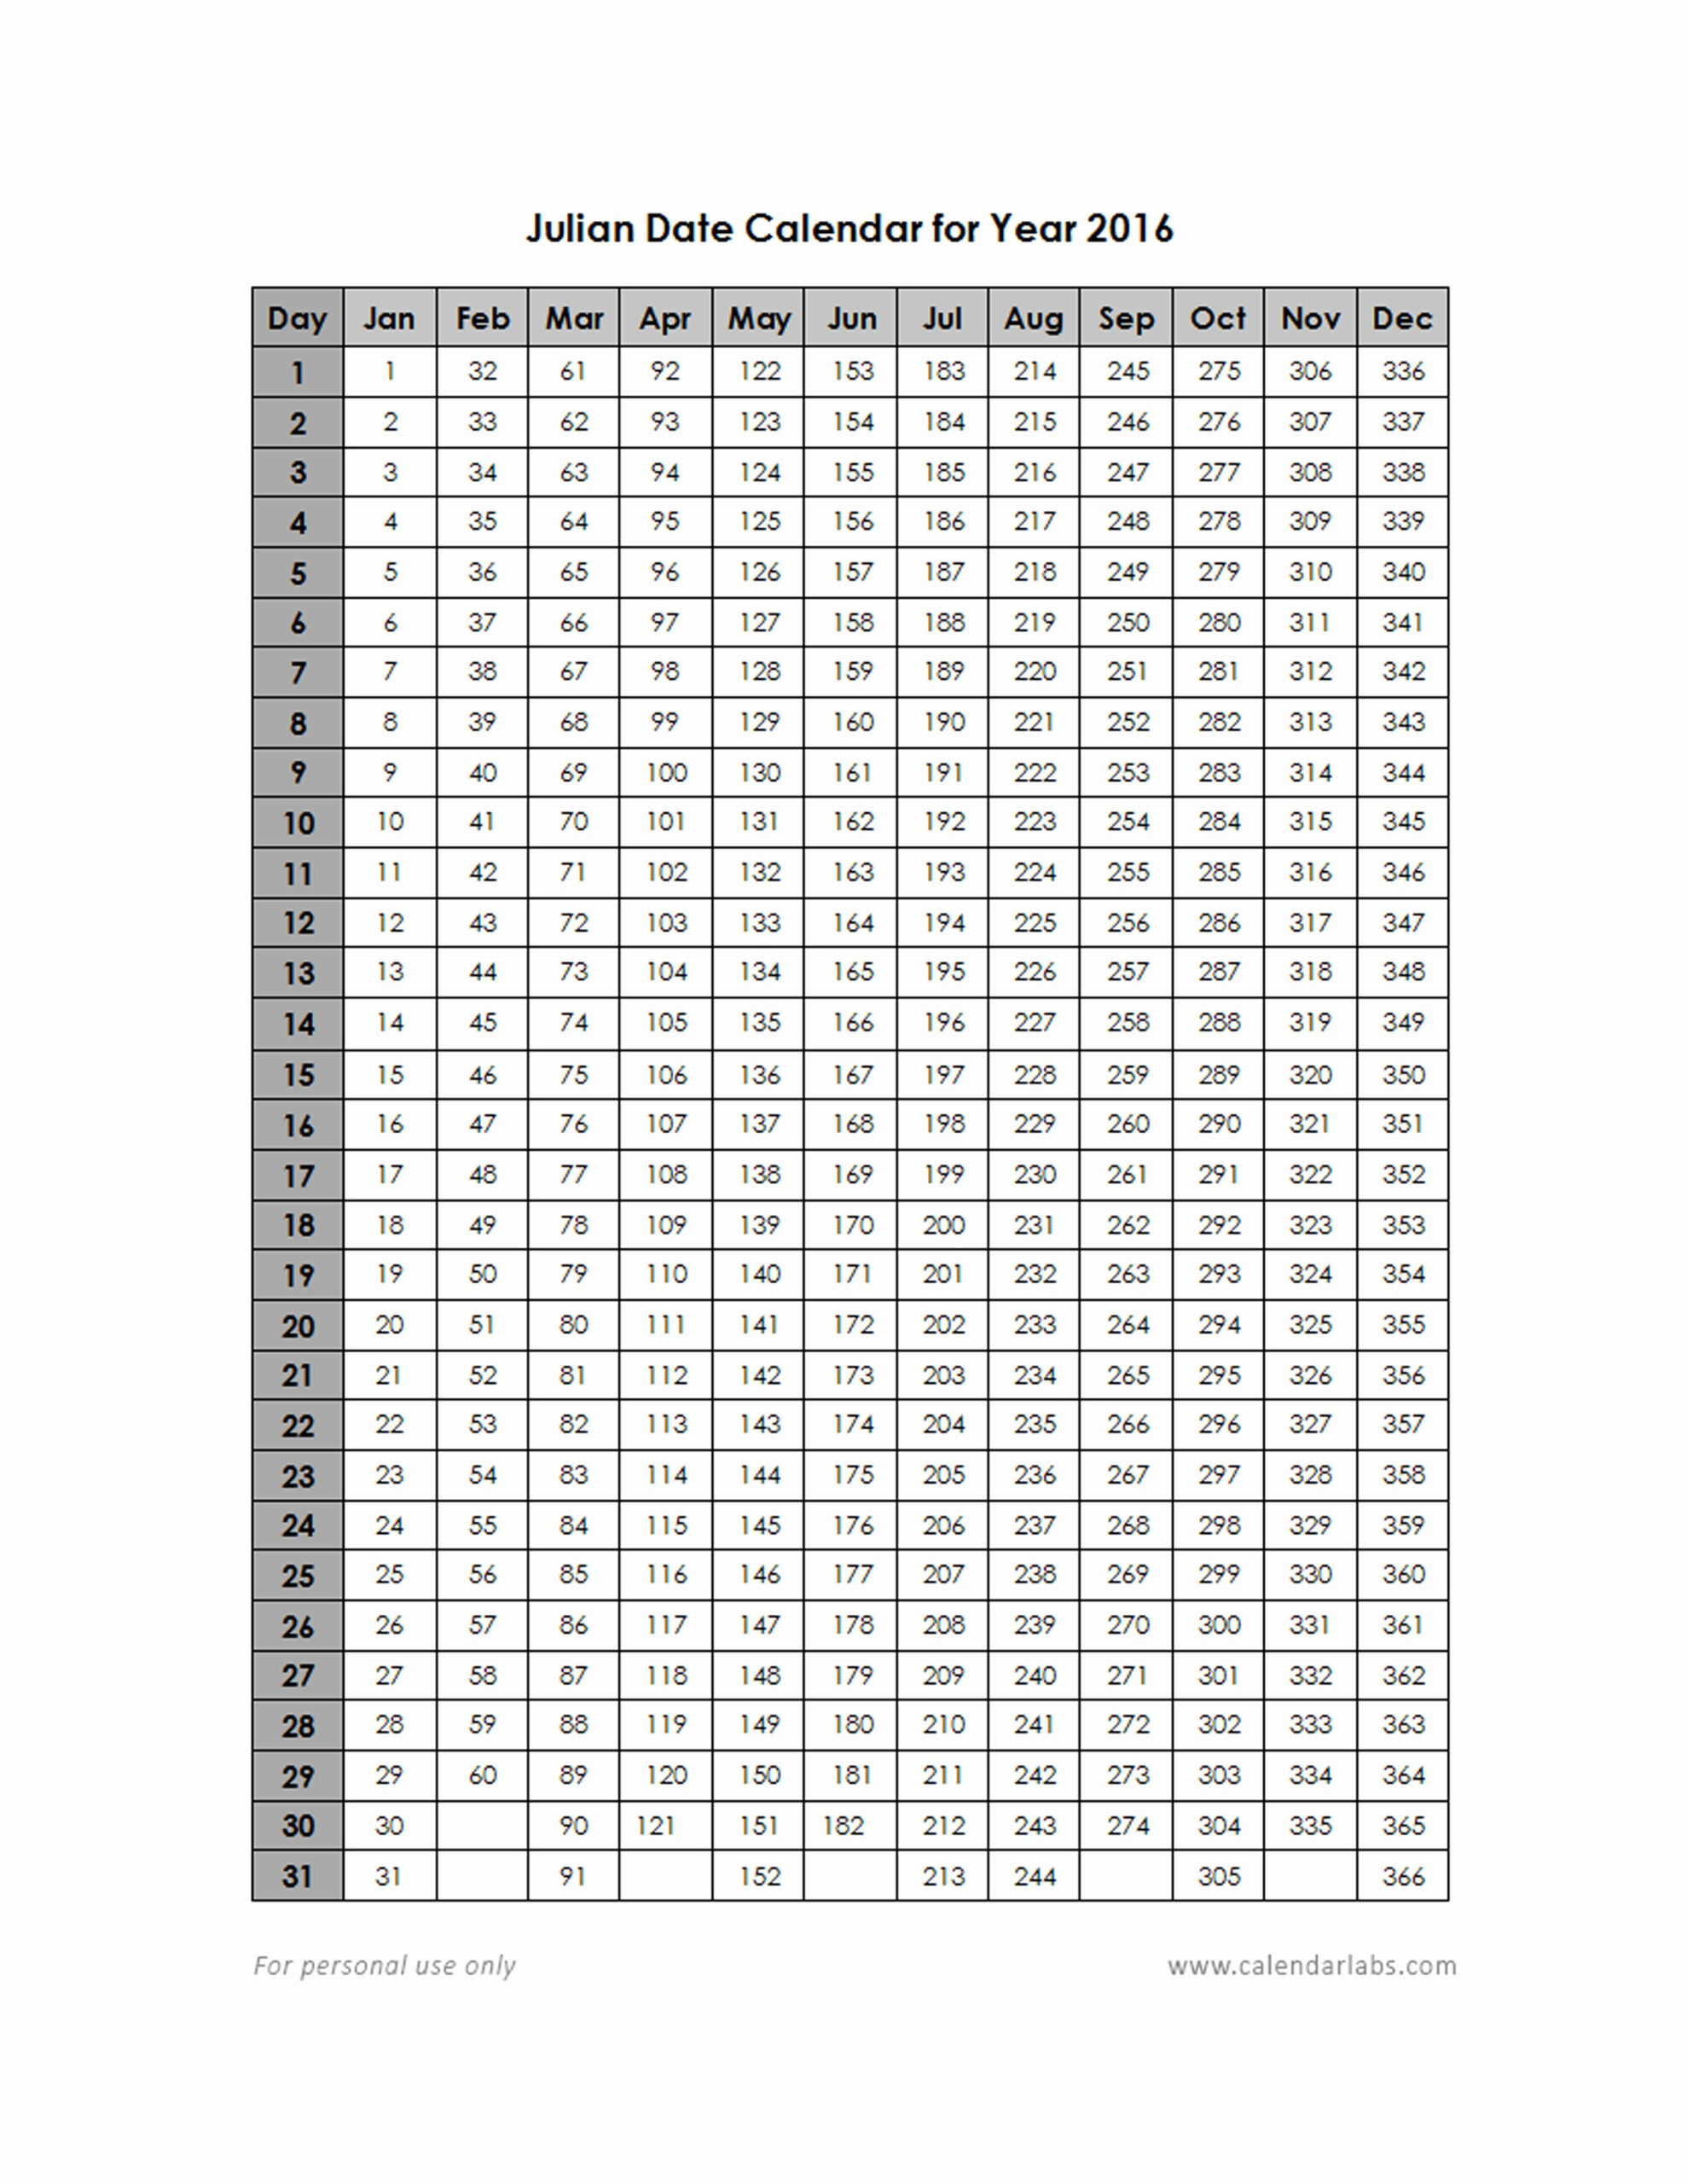 Julian Date Calendar Leap Year | Calendar For Planning with Julian Date Calendar Non Leap Year